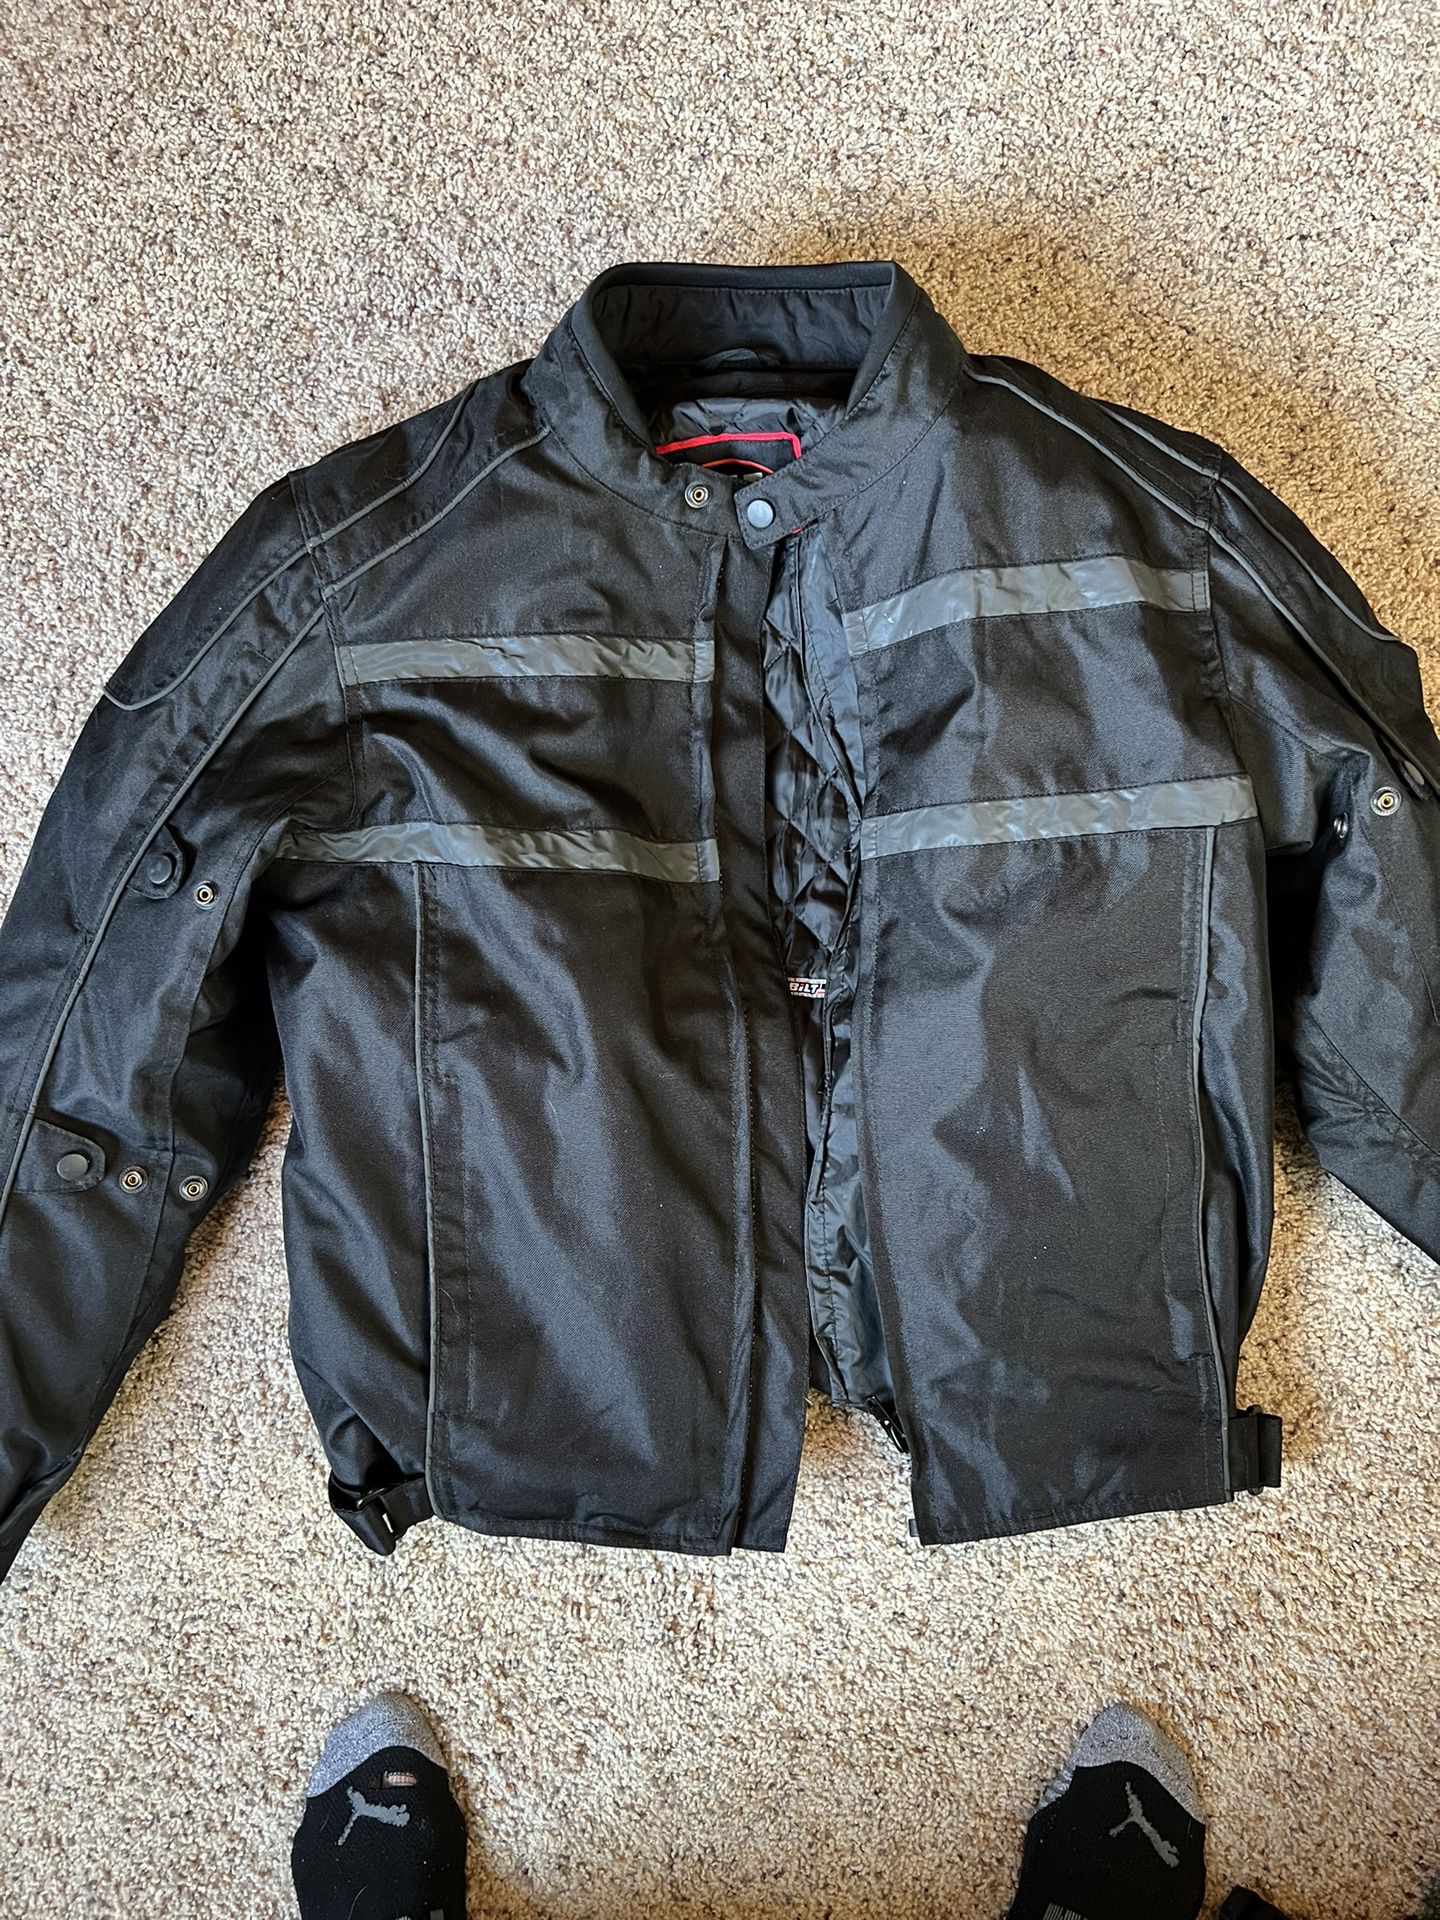 BILT Motorcycle Jacket